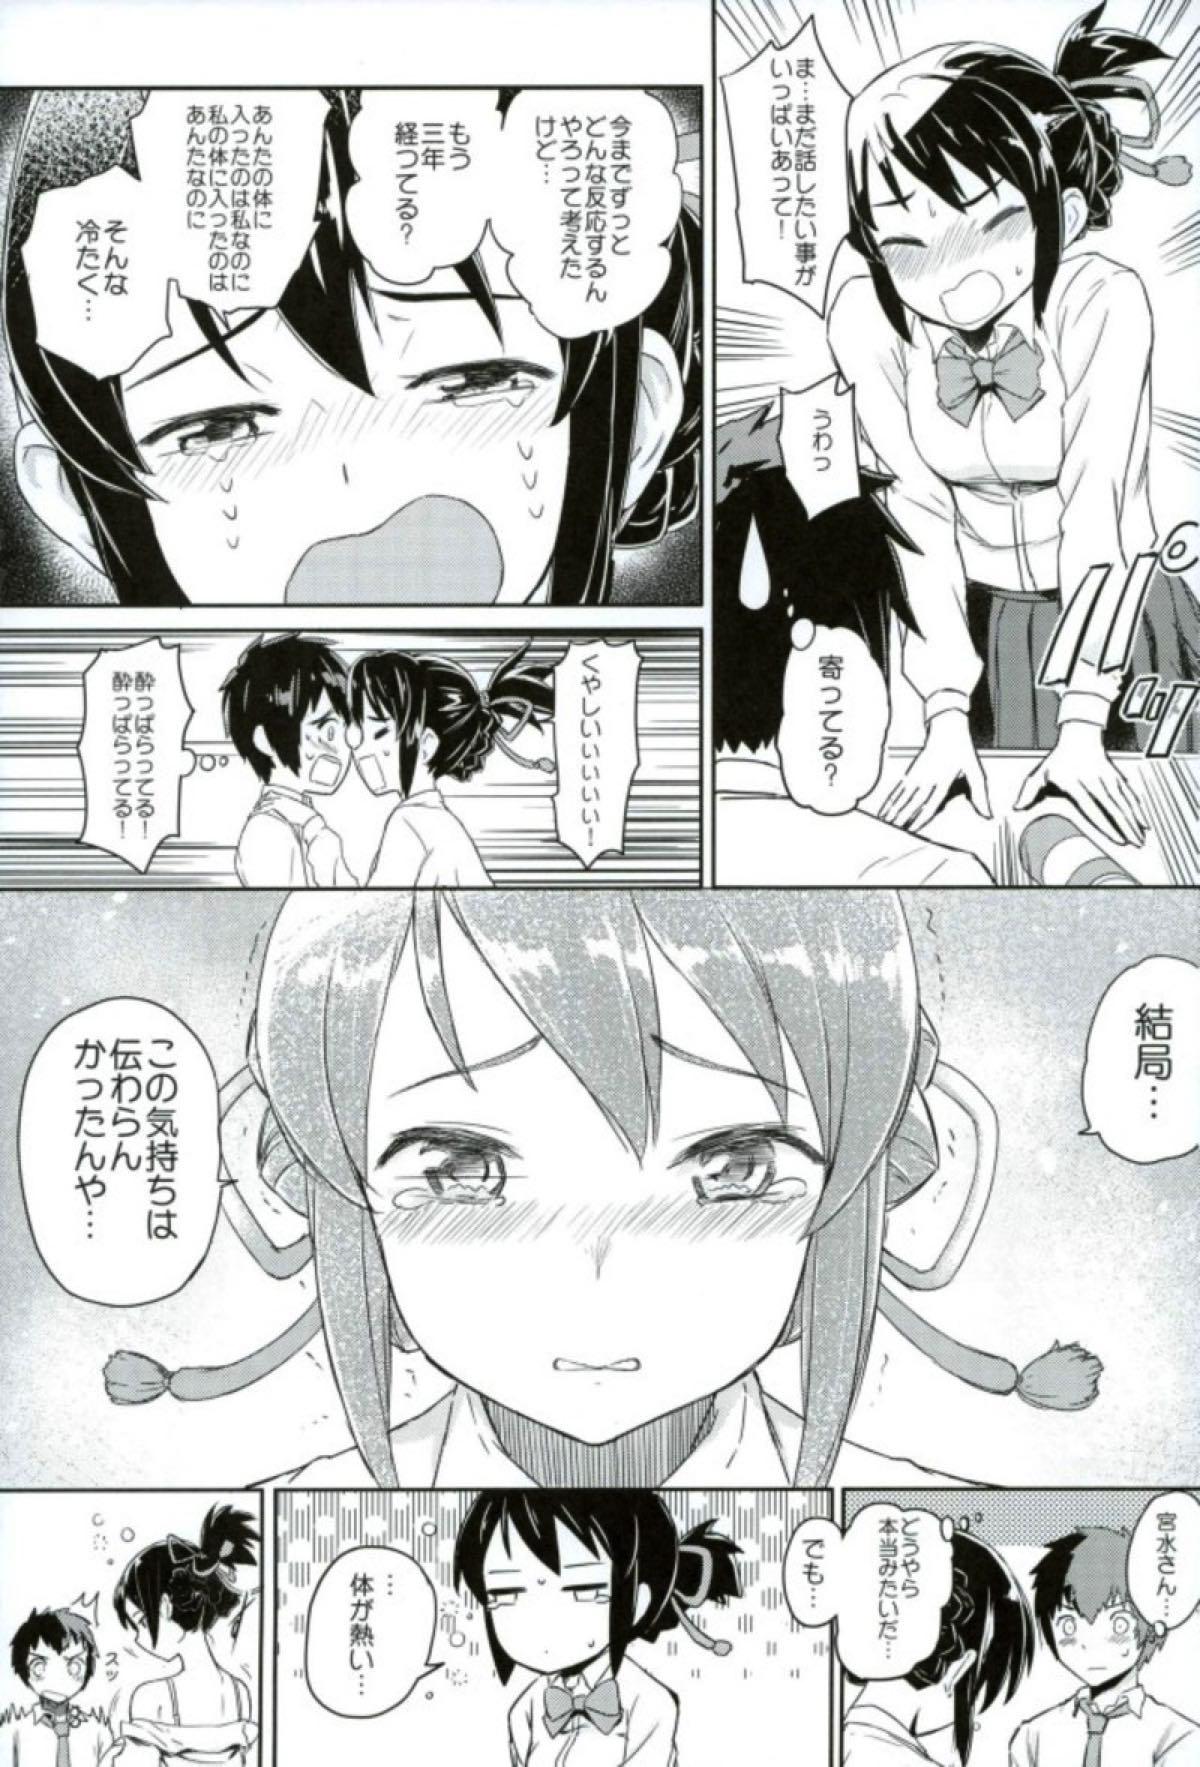 Sentando Kimi to Boku no Musubi - Kimi no na wa. Granny - Page 4